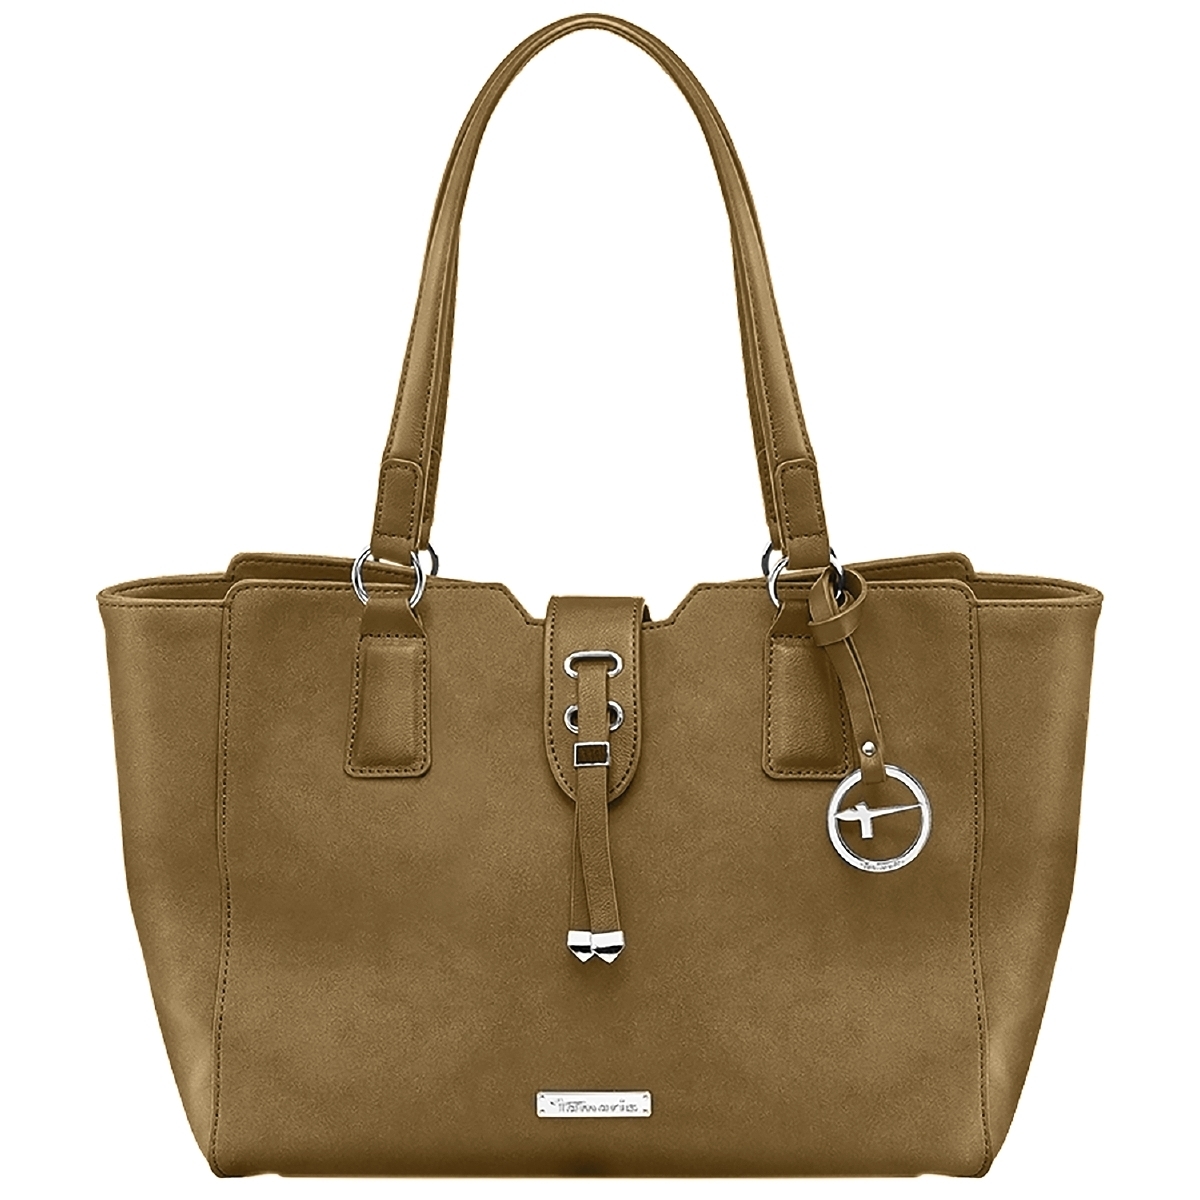 Tamaris Vina Shopping Bag Handtasche beige